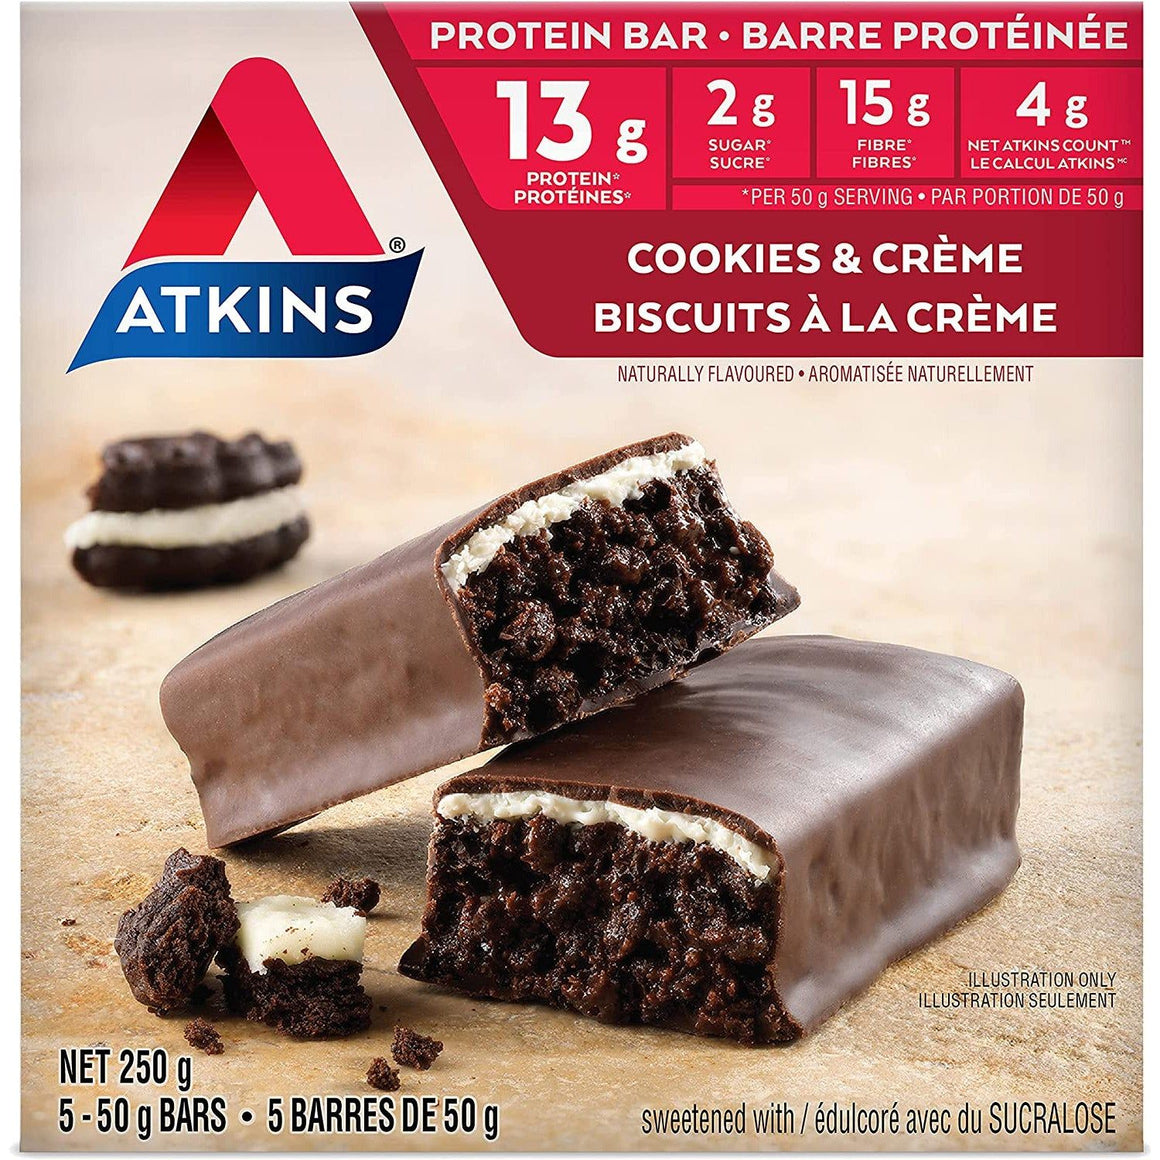 Atkins - Barres repas - Biscuits et crème - 5 barres